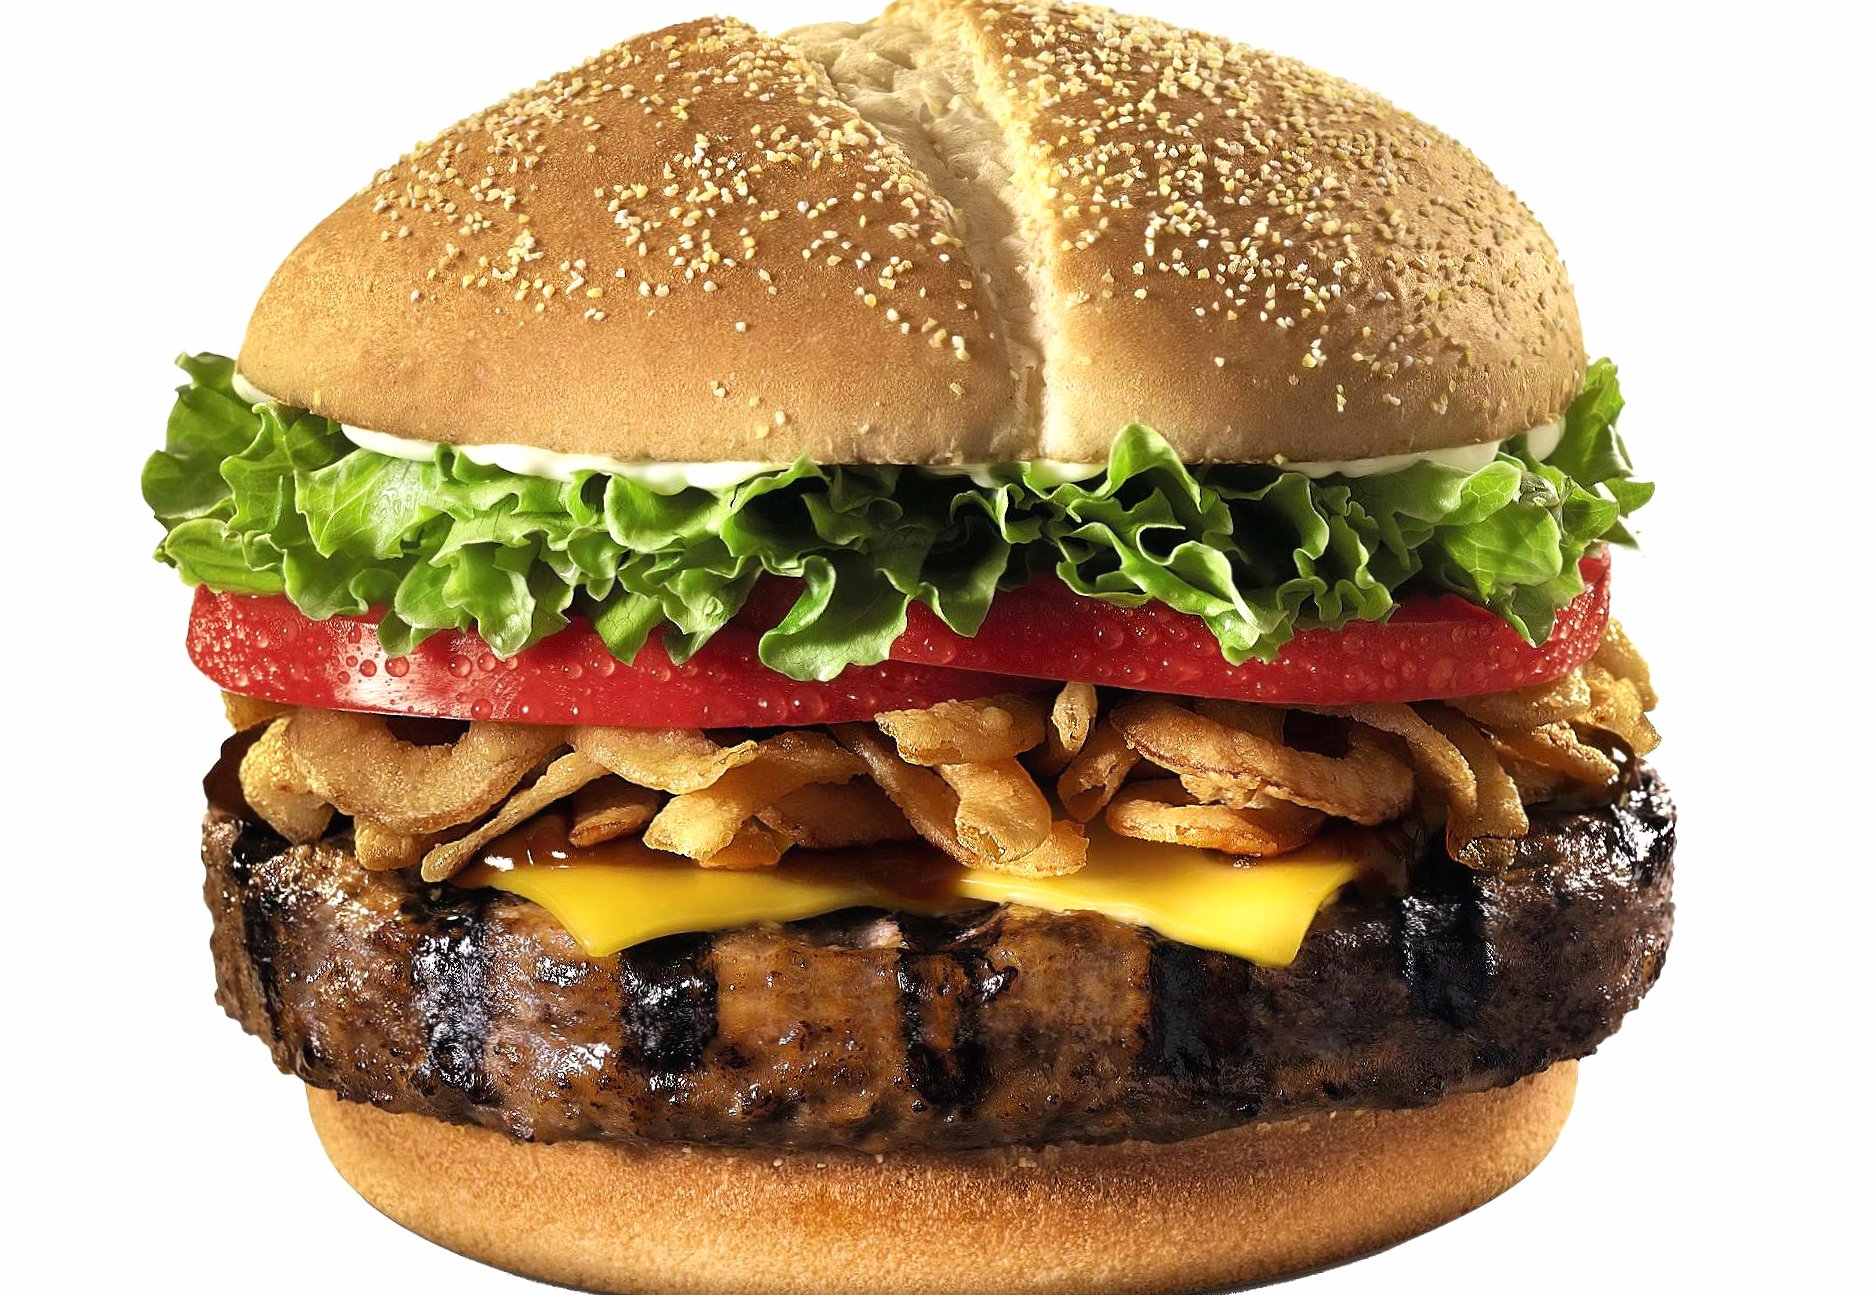 Hamburger at 1280 x 960 size wallpapers HD quality